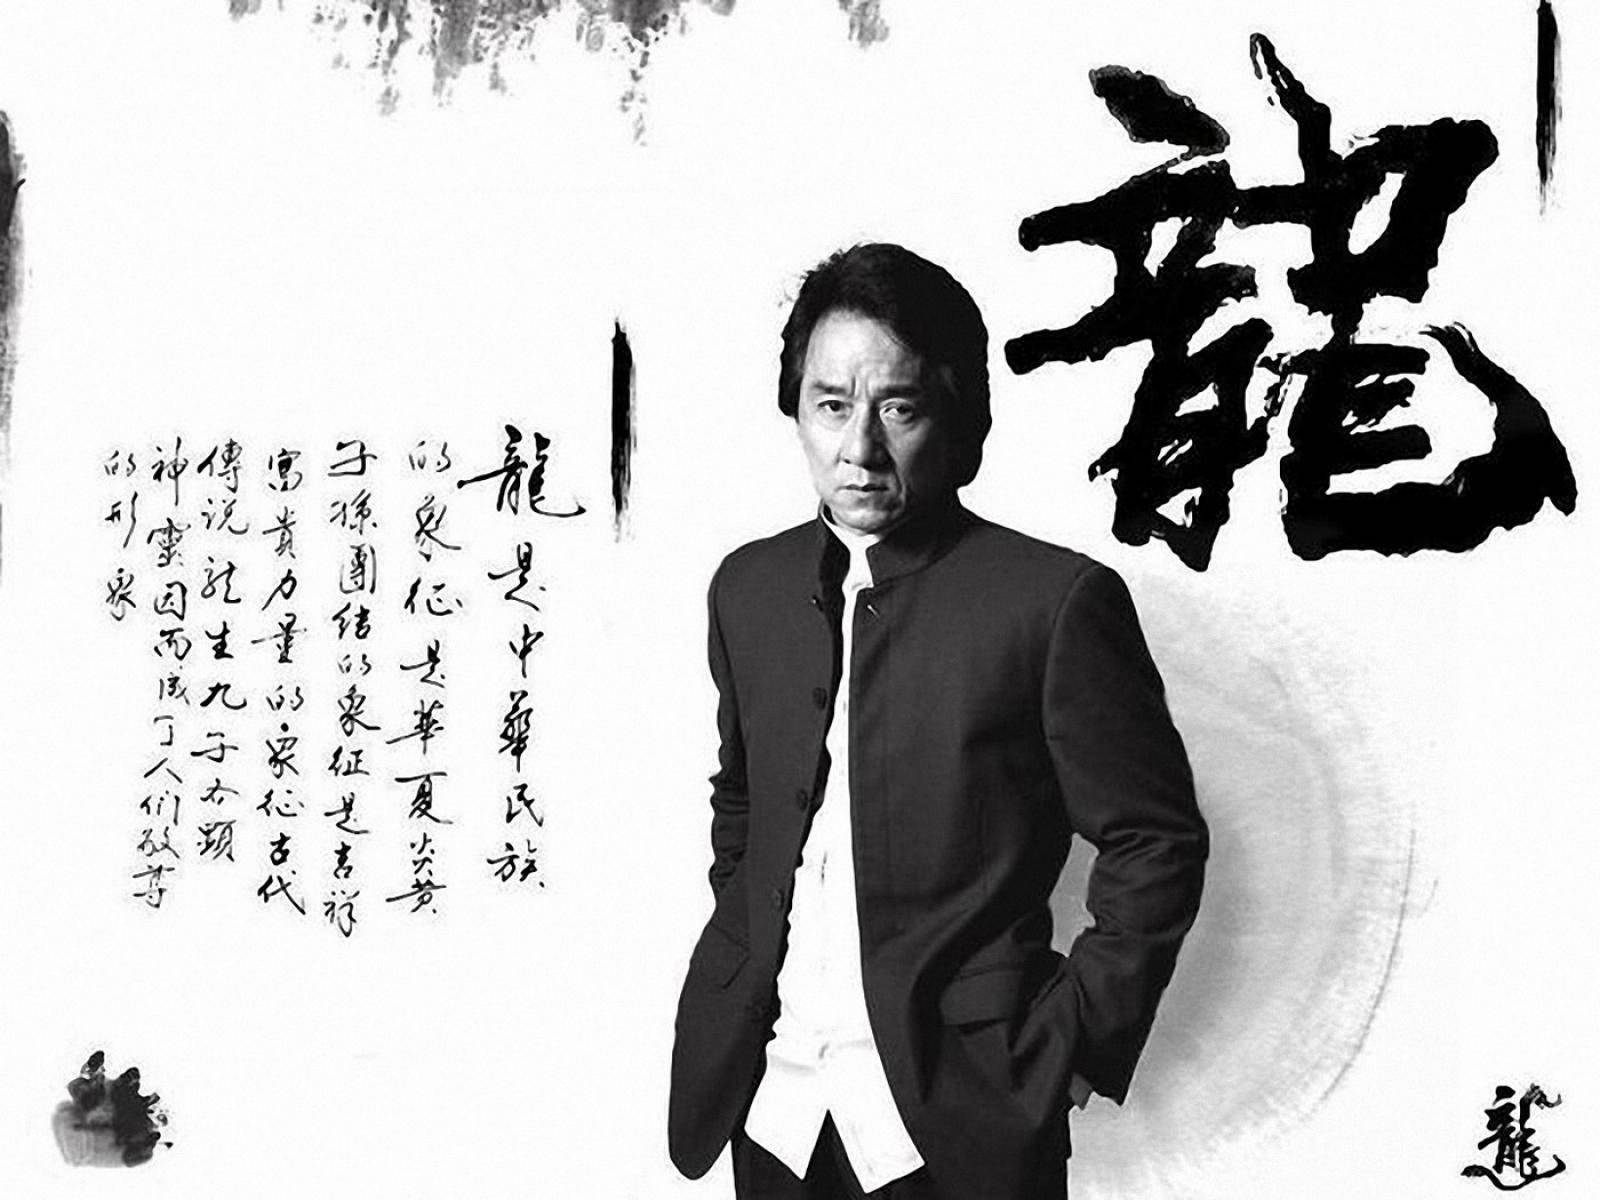 Jackie Chan 1600 X 1200 Wallpaper